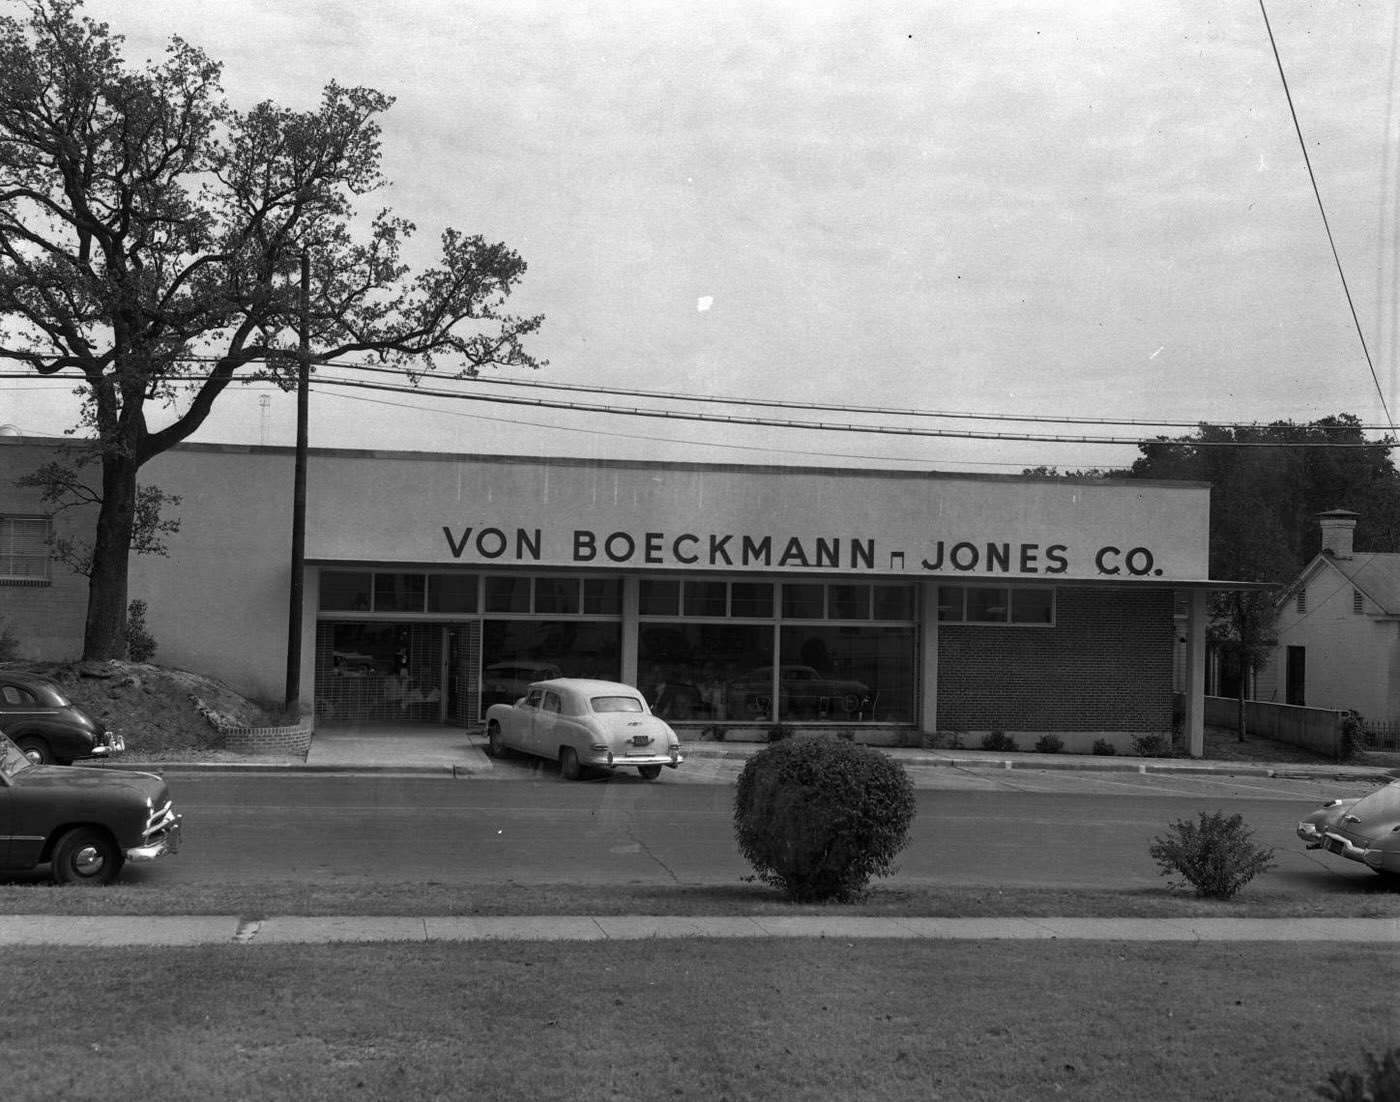 Von Boeckmann-Jones Company Building, 1950